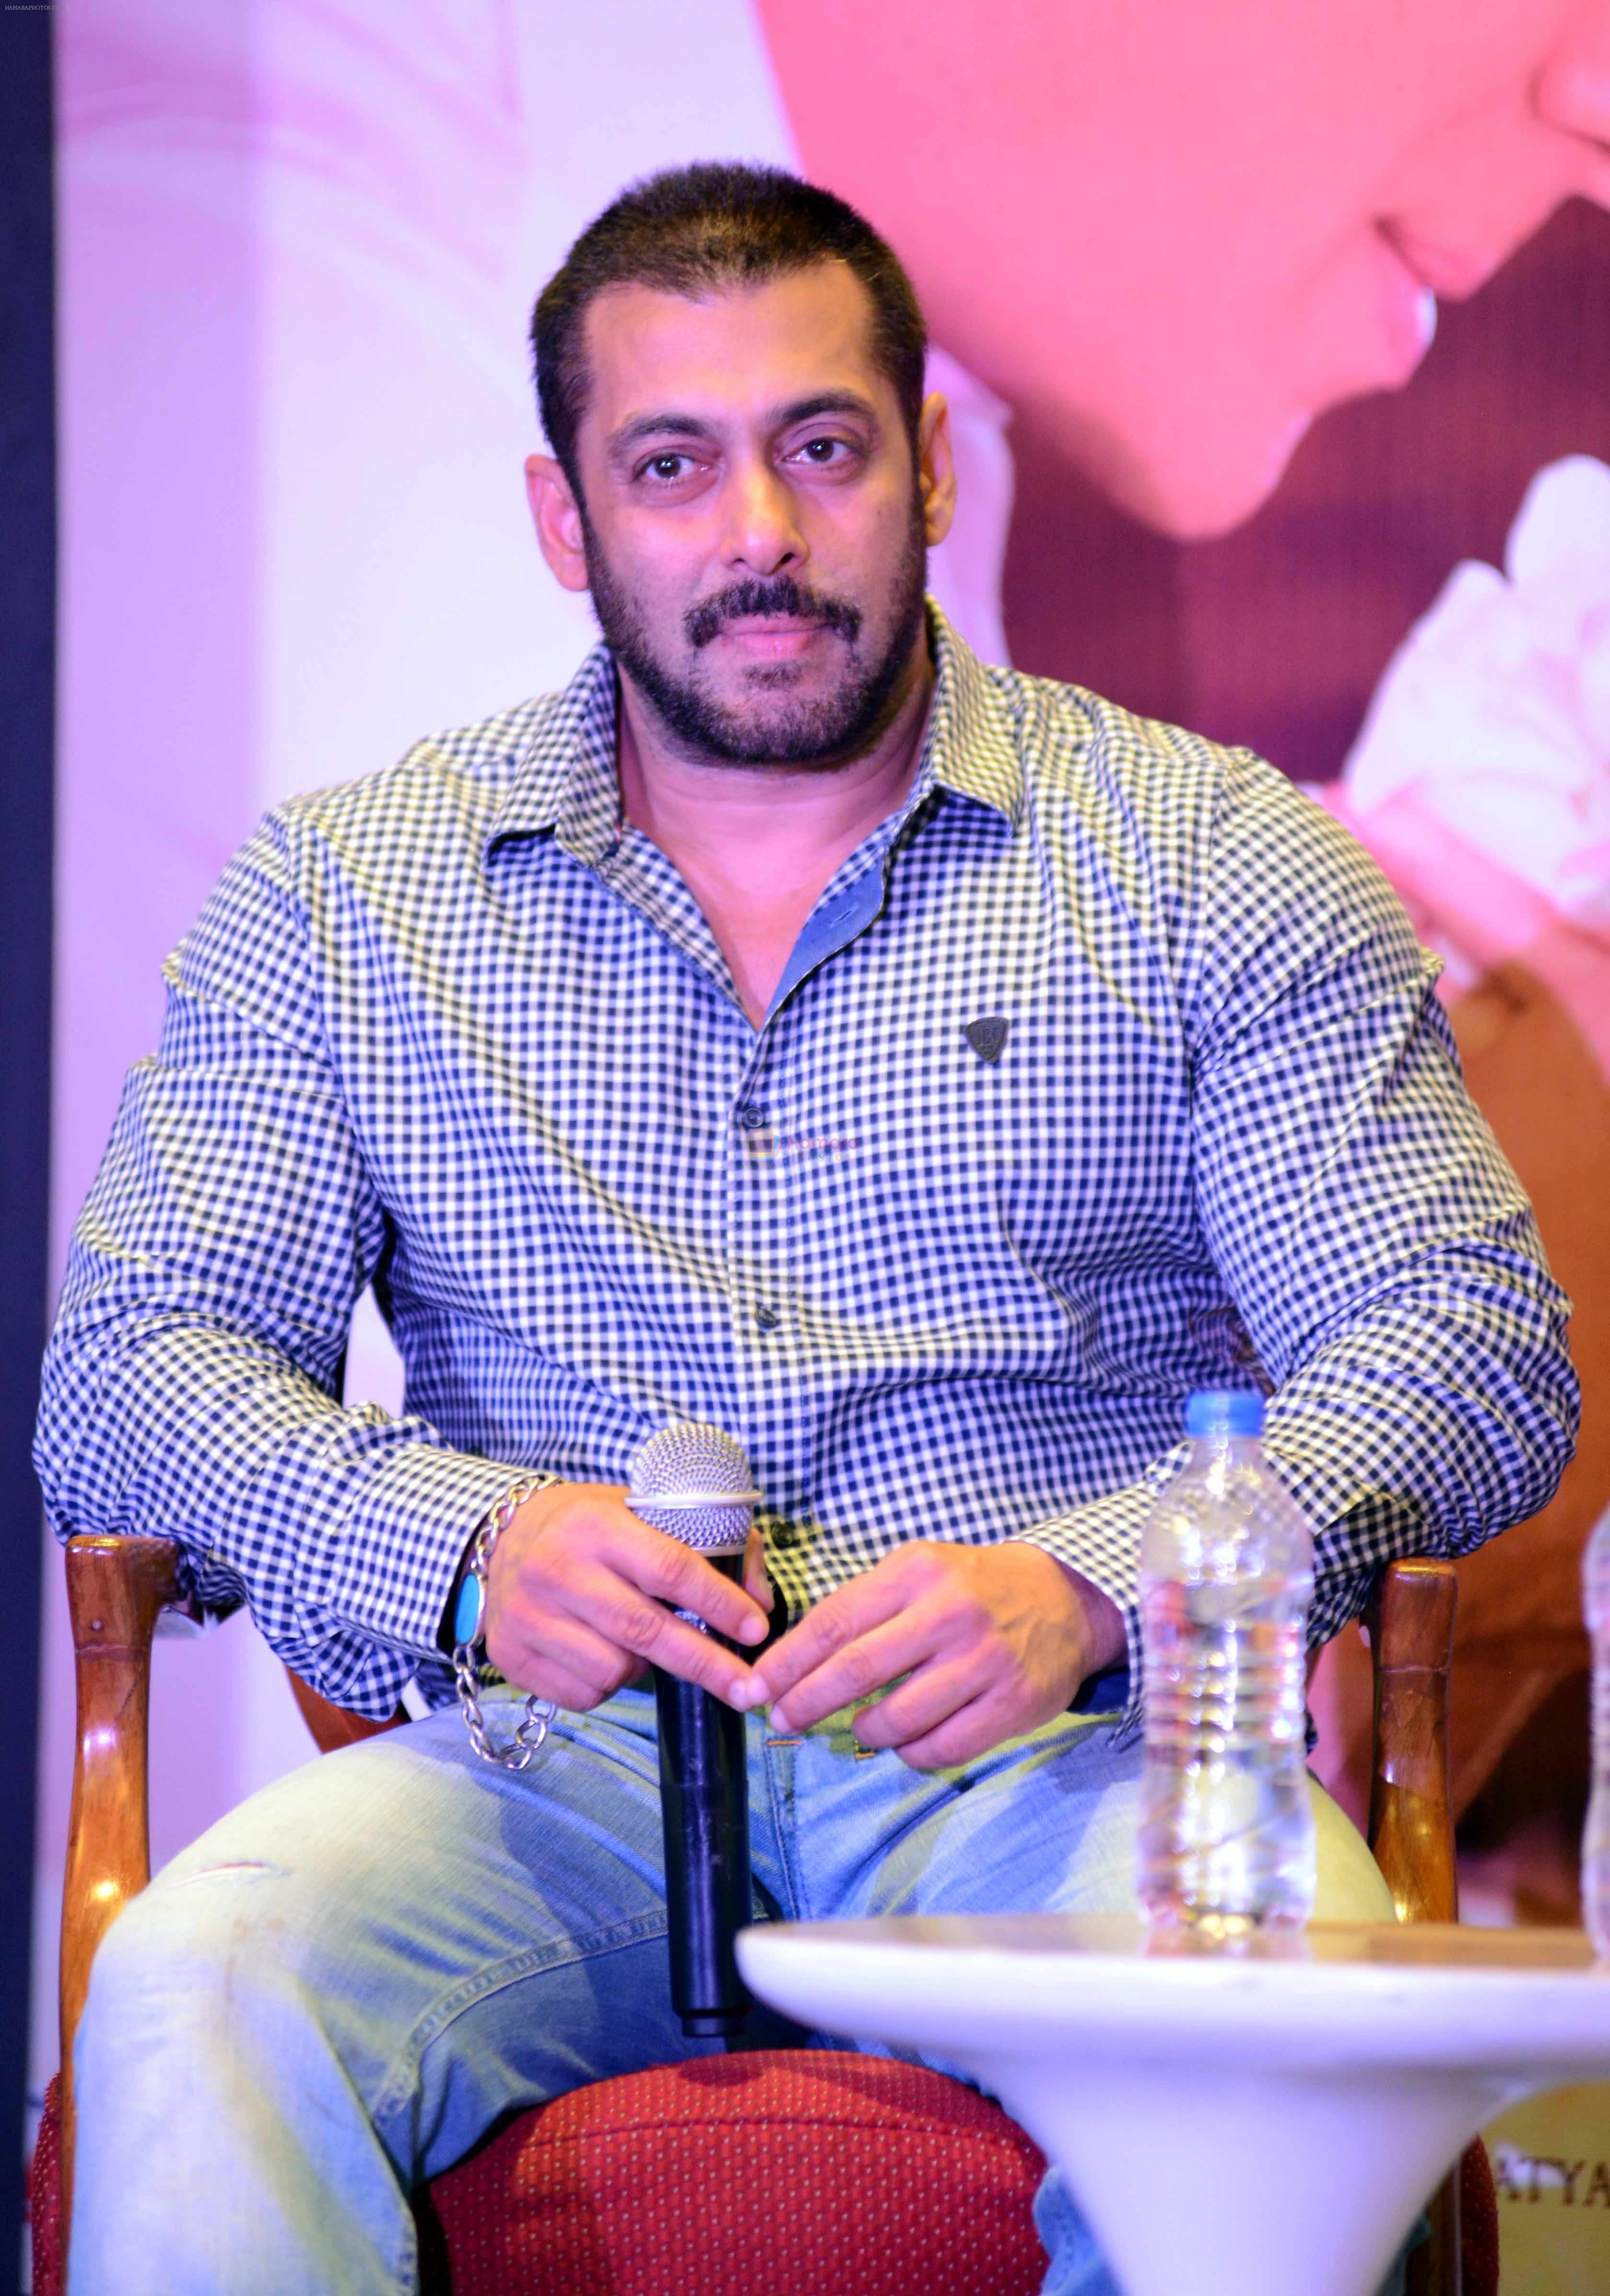 Salman Khan at the Press Conference Prem Ratan Dhan Payo in Le Meridan new delhi on 4th Nov 2015